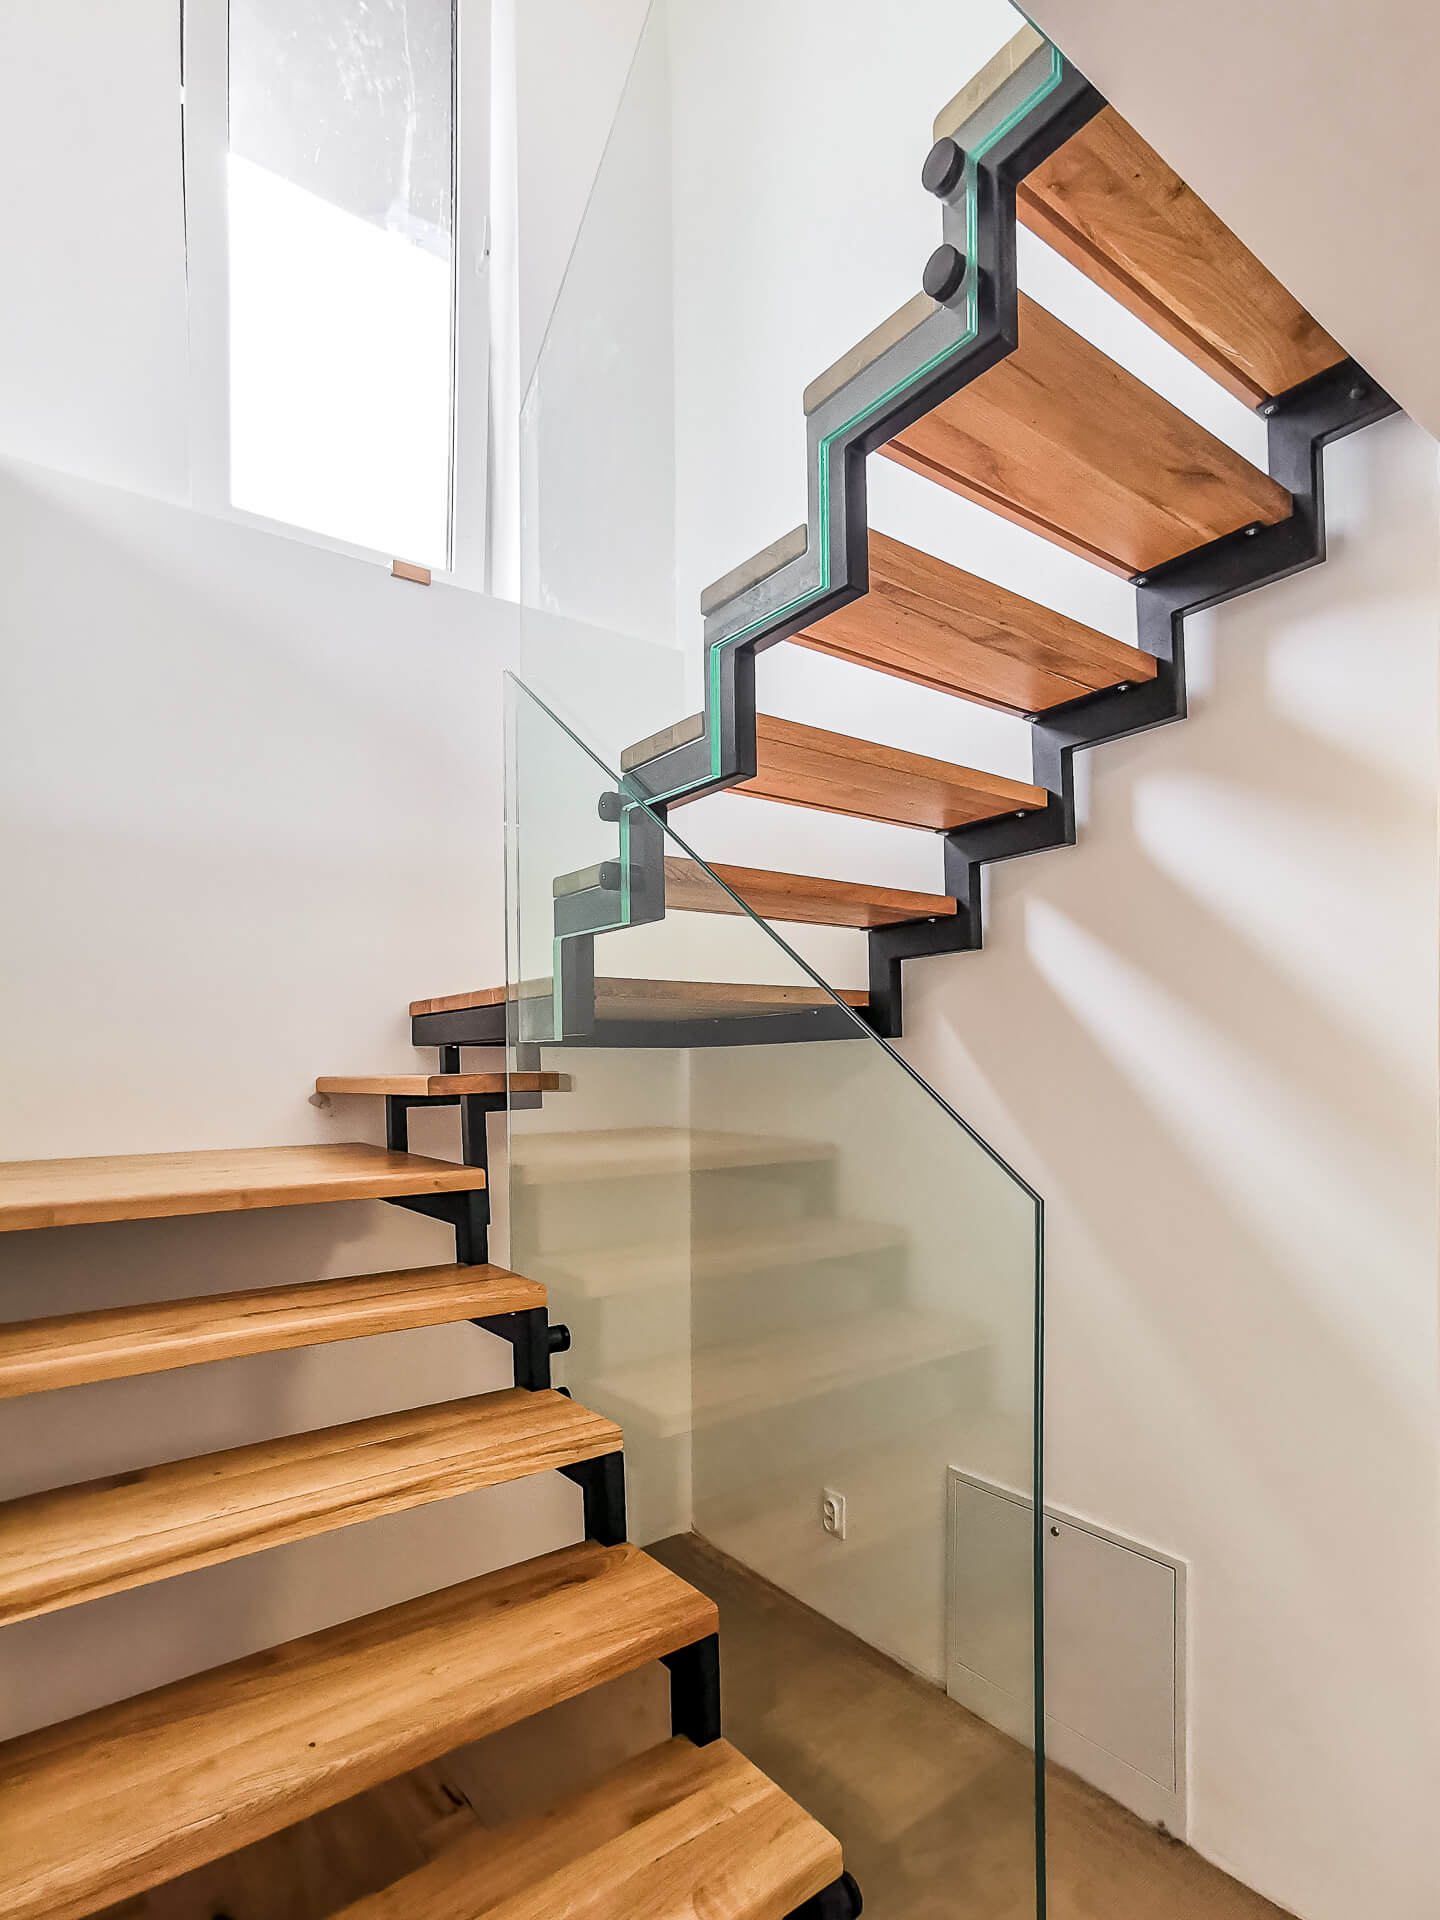 sklenené zábradlie ukotvené do oceľovej konštrukcie s drevenými stupnicami a atypickým výrezom podľa schodov